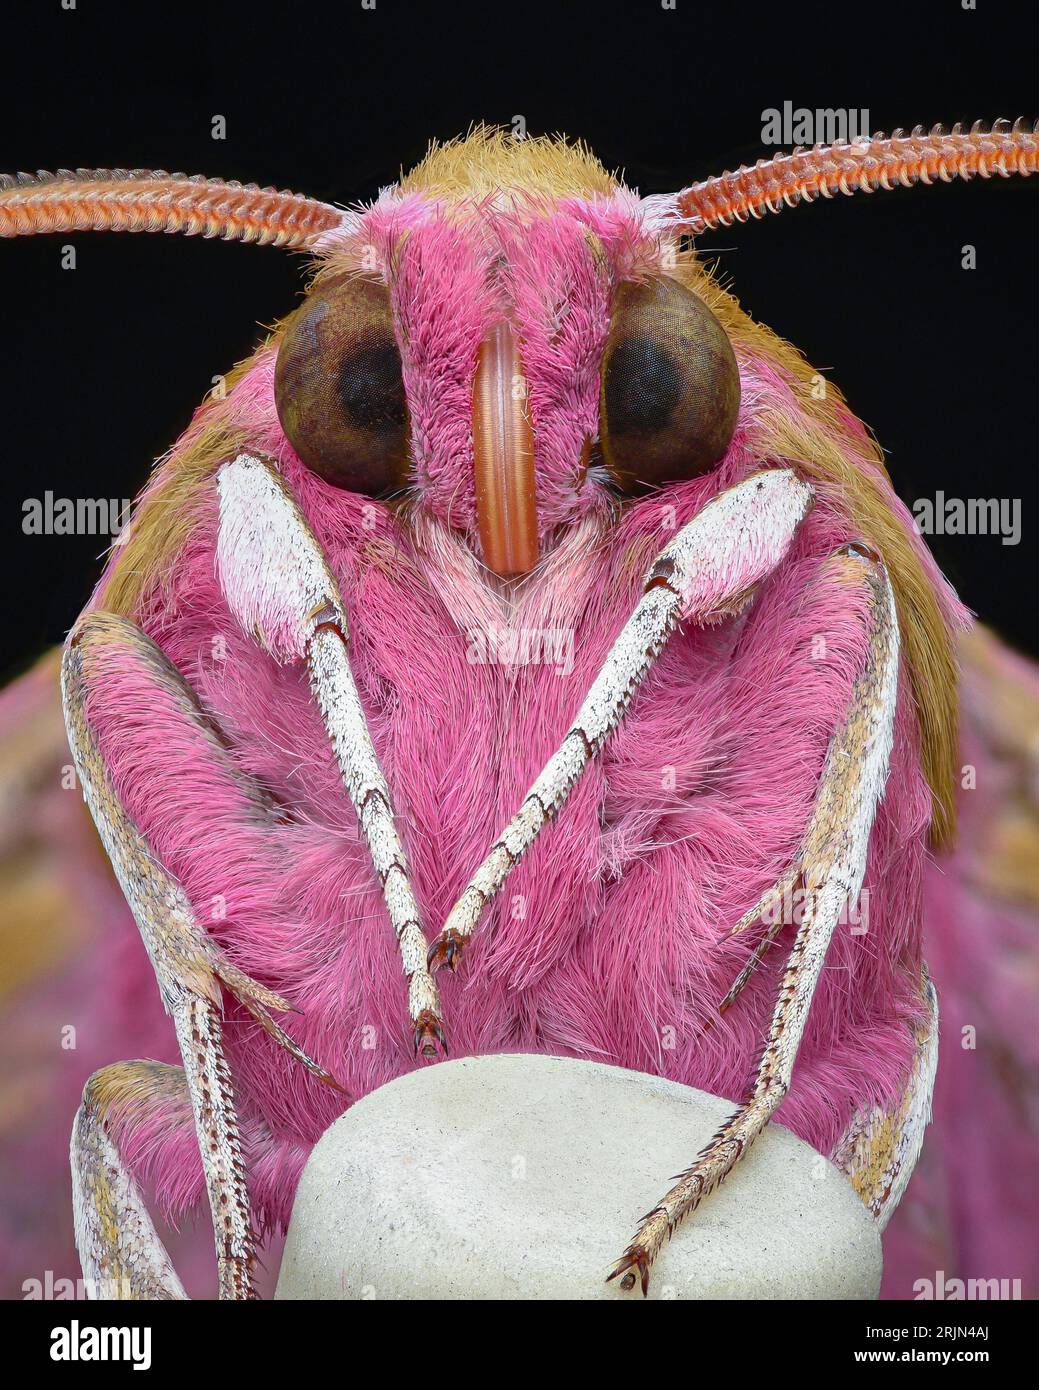 Ritratto della parte inferiore di una falena rosa con occhi marroni e gambe bianche in piedi su una matita a punta di gomma (Elephant Hawk-Moth, Deilephila elpenor) Foto Stock